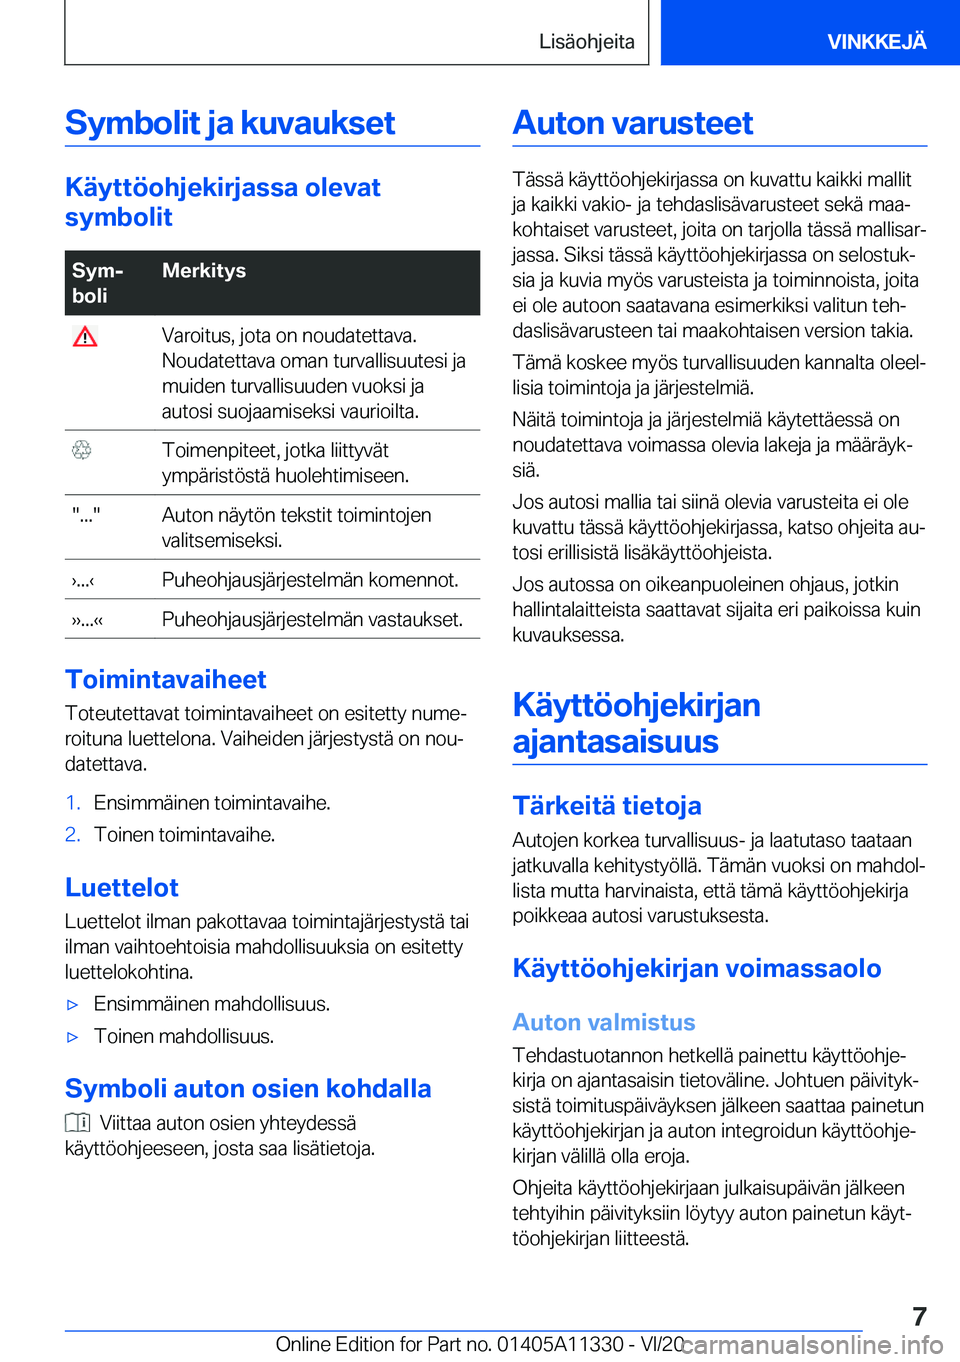 BMW 5 SERIES 2021  Omistajan Käsikirja (in Finnish) �S�y�m�b�o�l�i�t��j�a��k�u�v�a�u�k�s�e�t
�K�